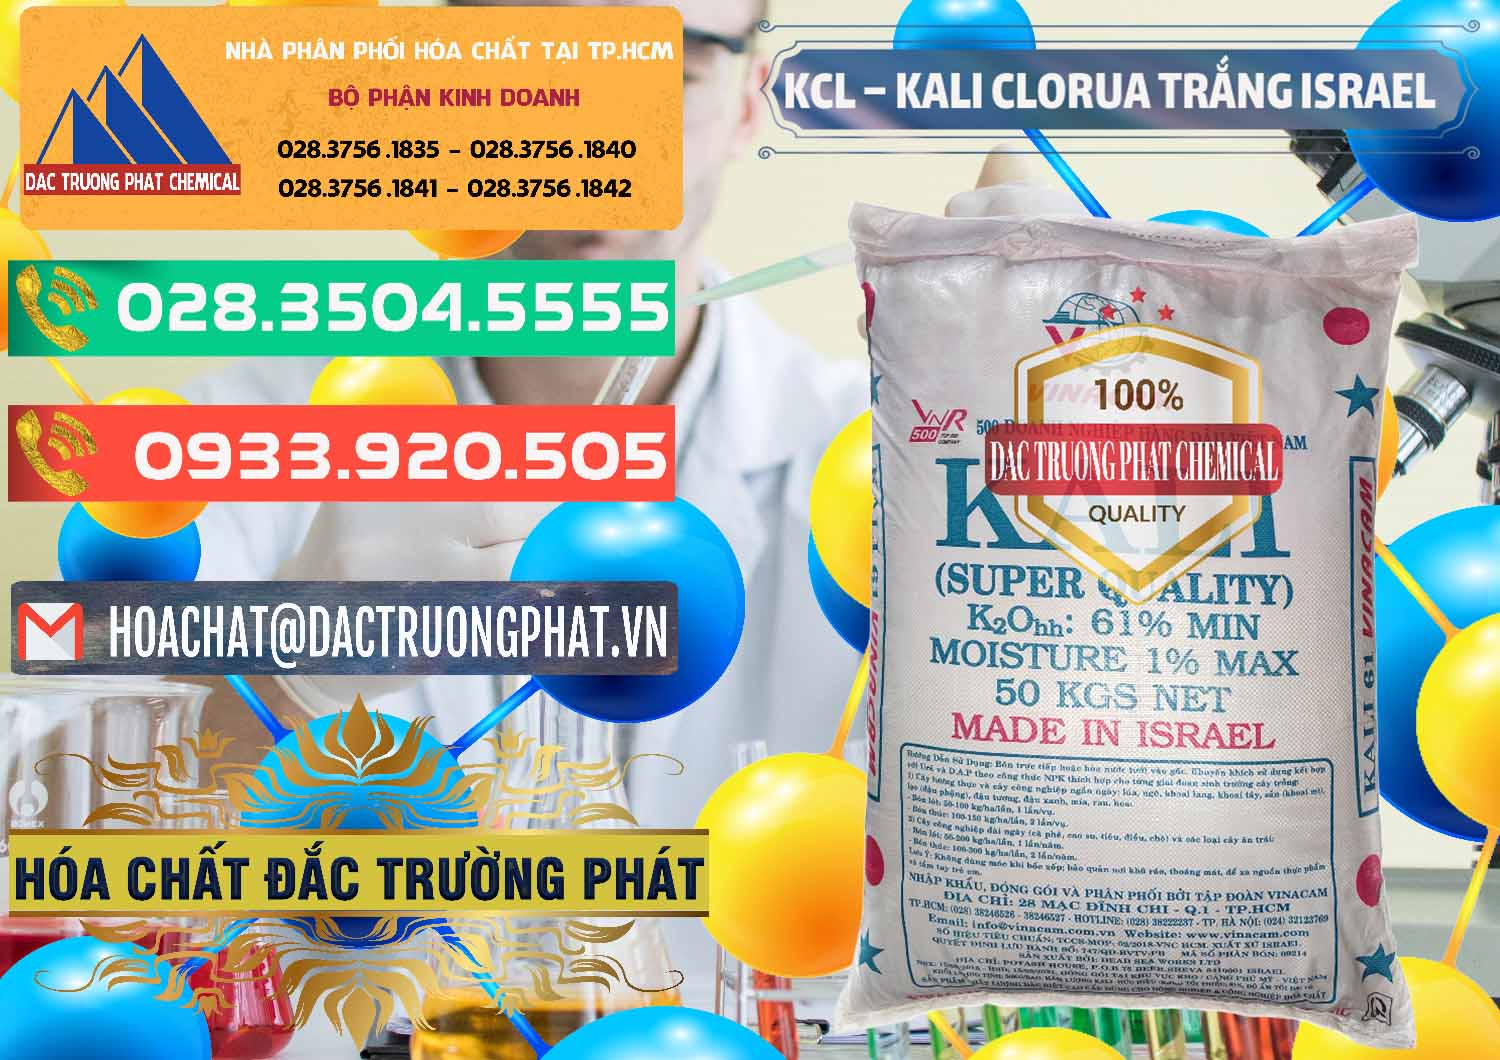 Cty chuyên phân phối - bán KCL – Kali Clorua Trắng Israel - 0087 - Cty chuyên cung cấp & bán hóa chất tại TP.HCM - congtyhoachat.com.vn